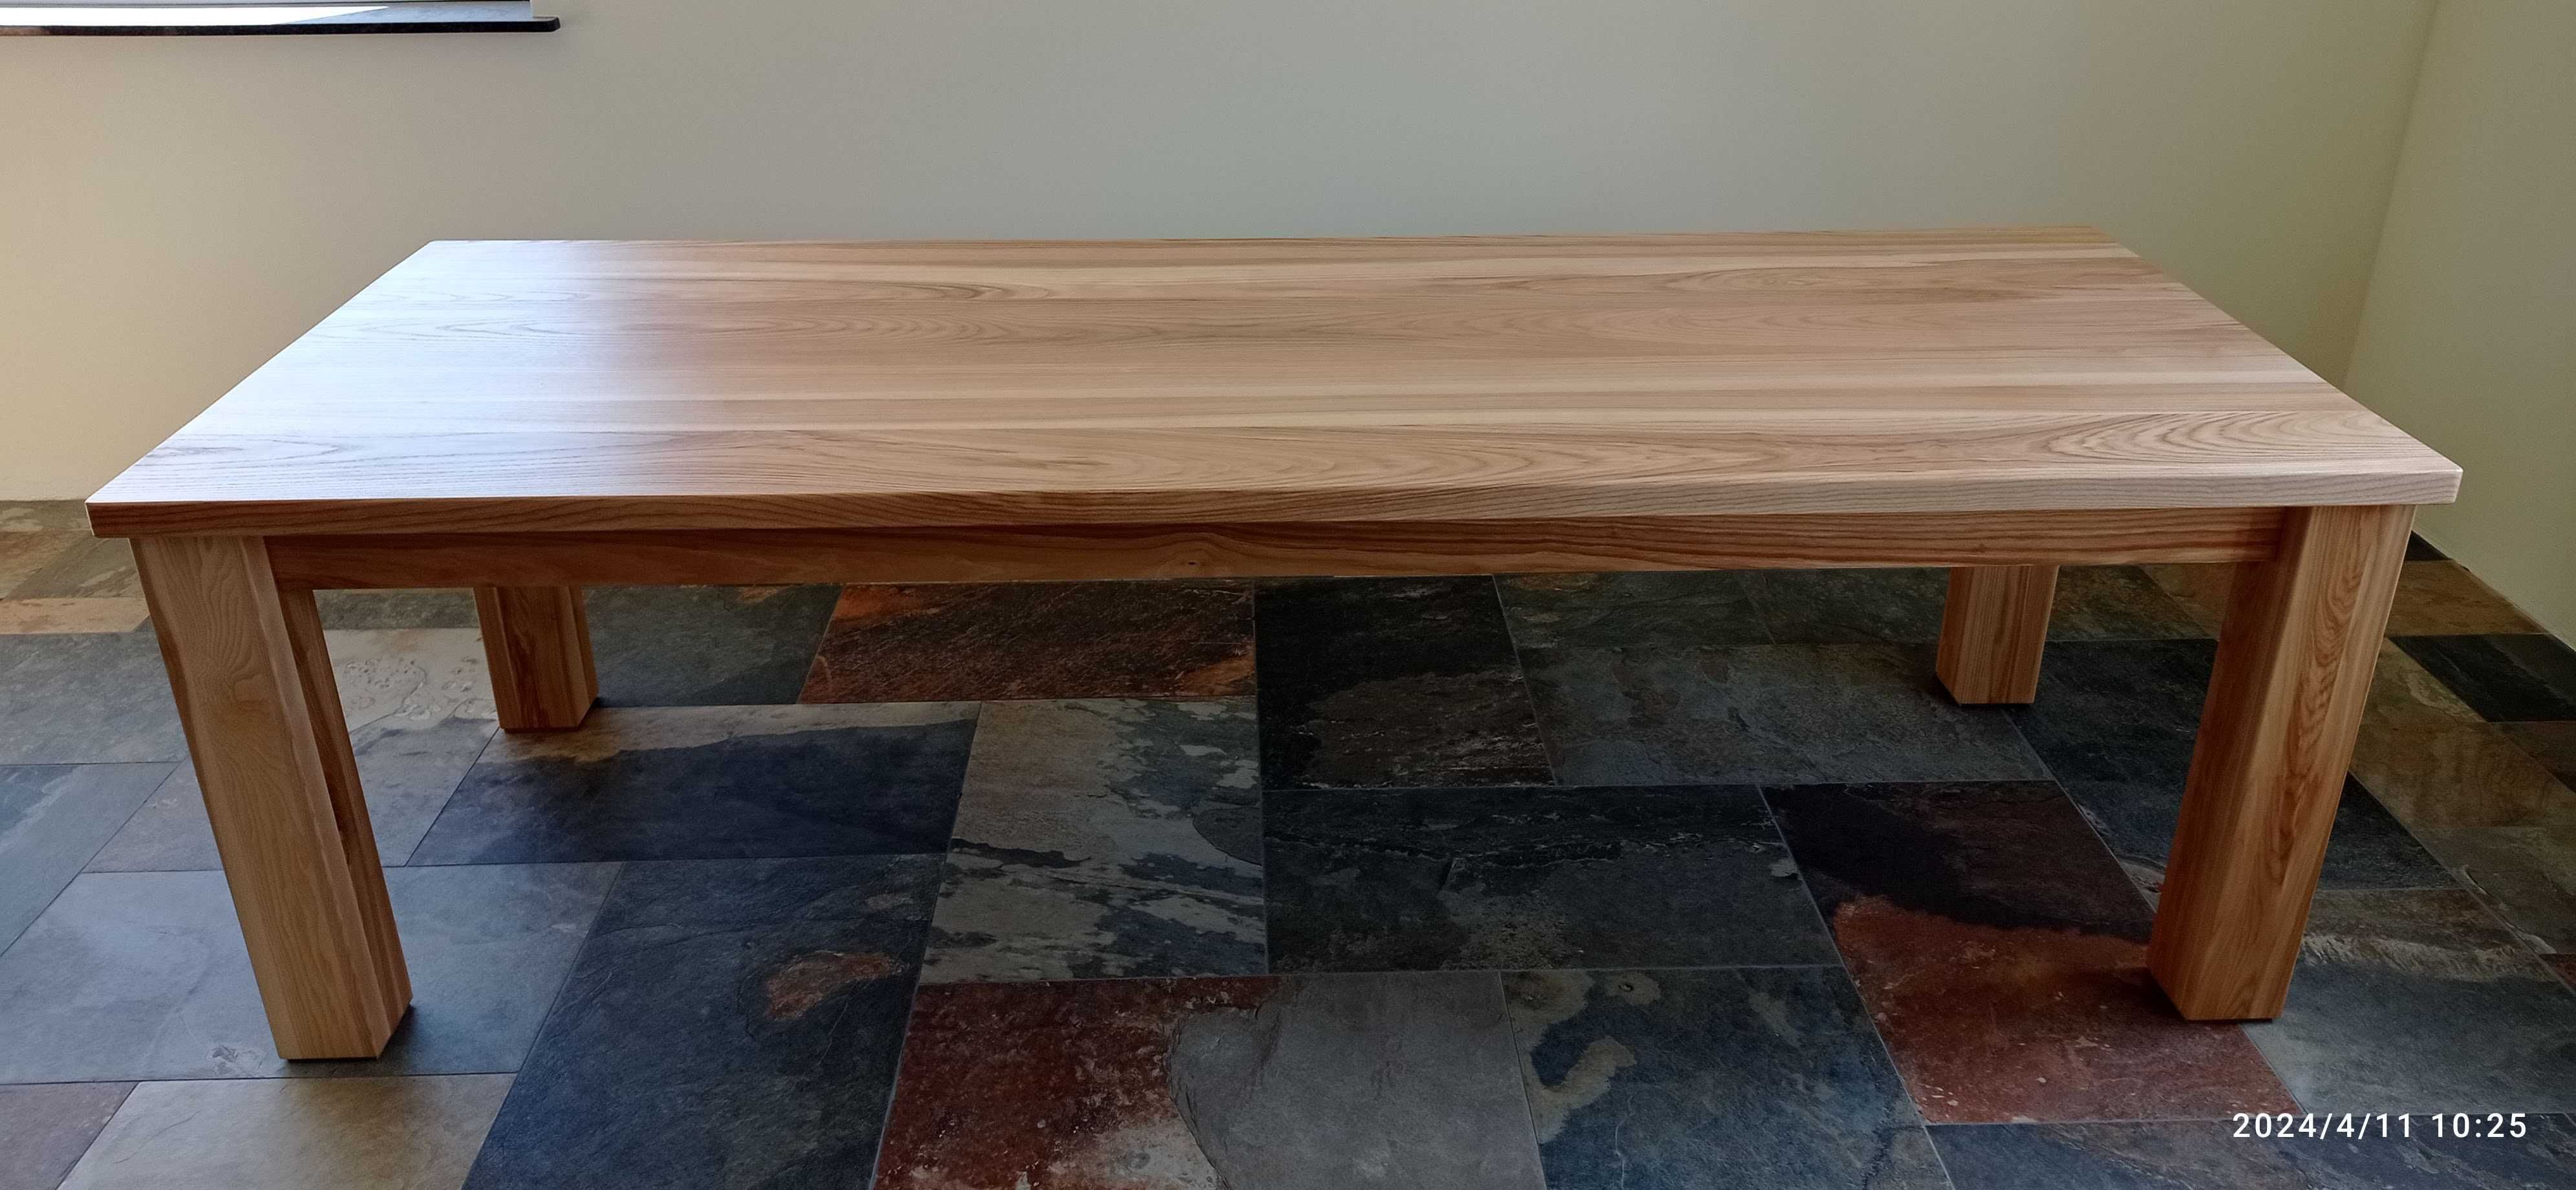 Stół Jesionowy: Urok Naturalnego Drewna